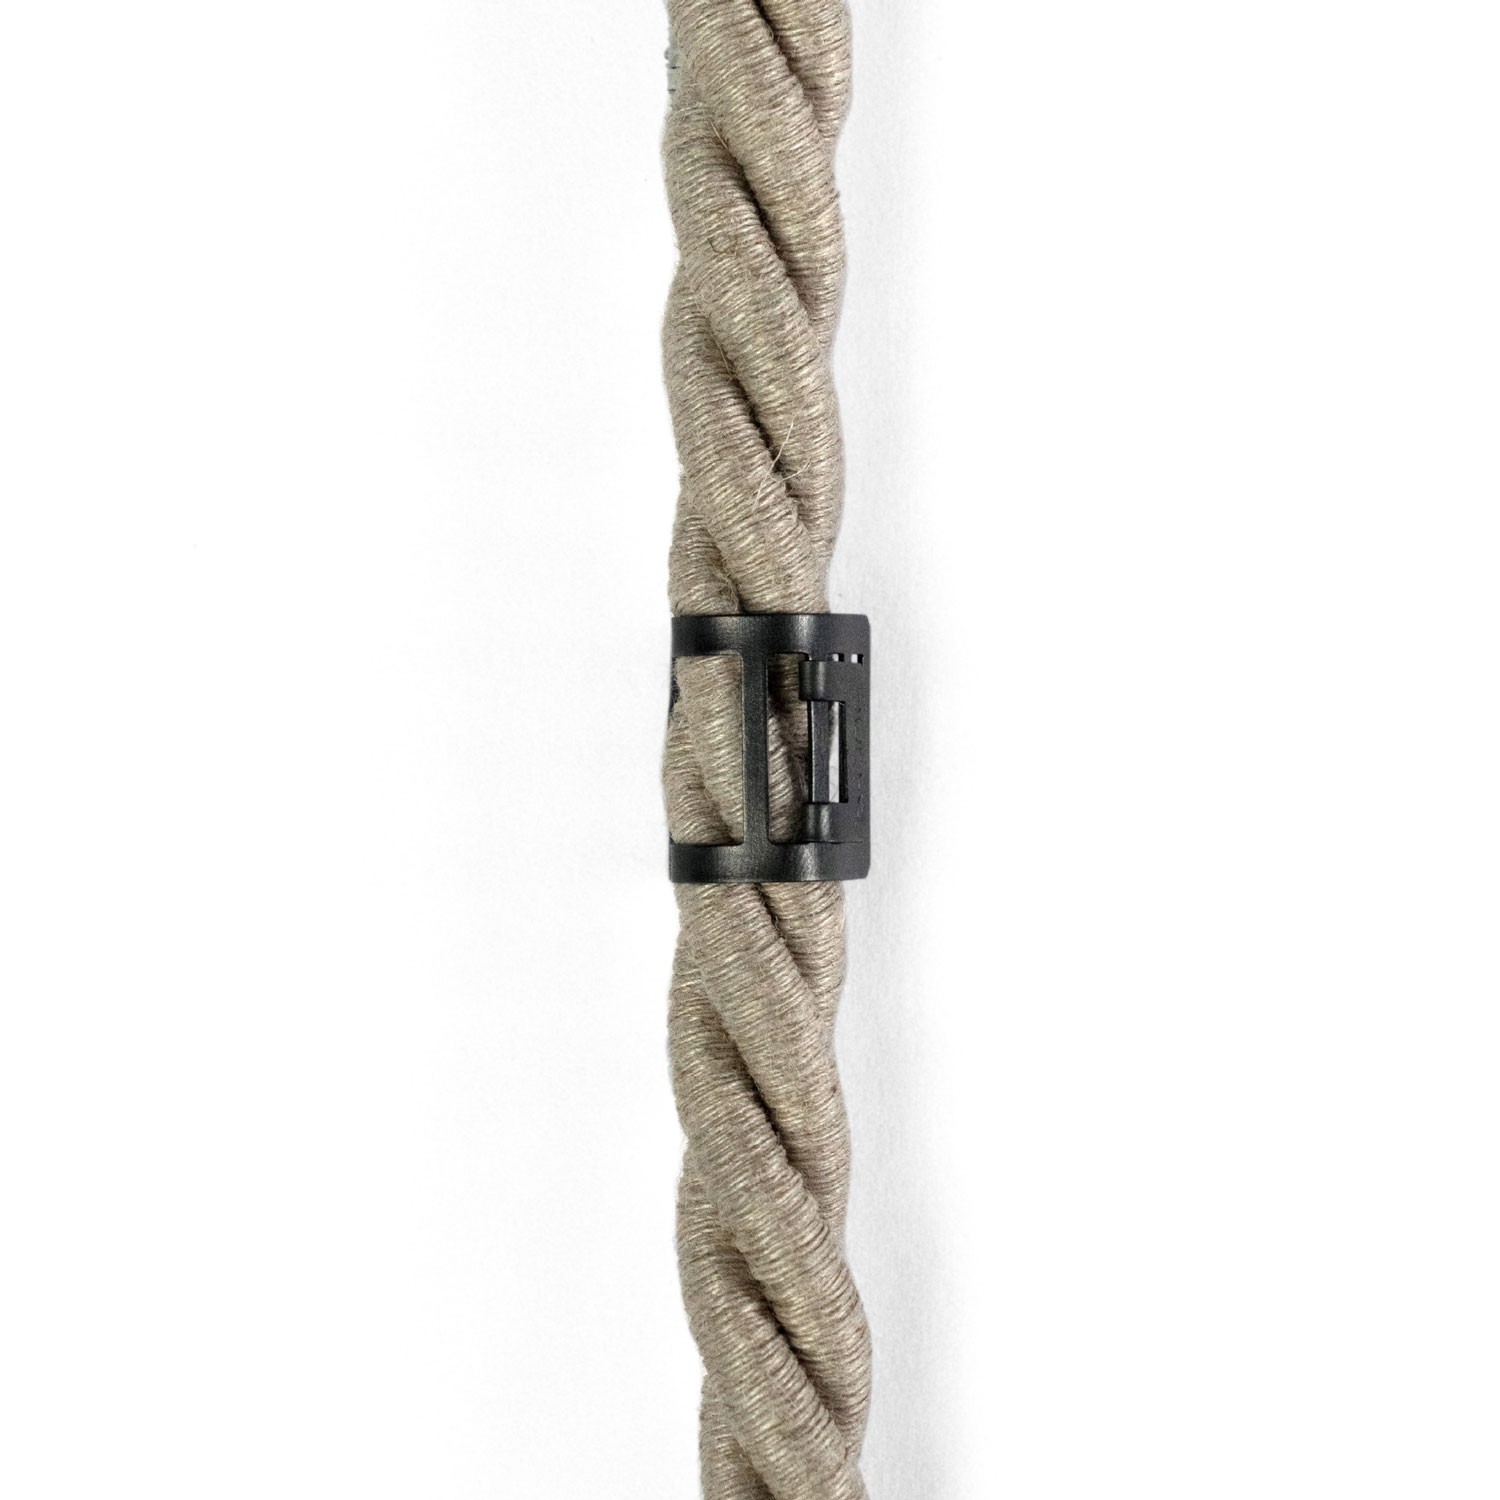 Clip de sujeción de cable metálico para cordón de 16 mm de diámetro